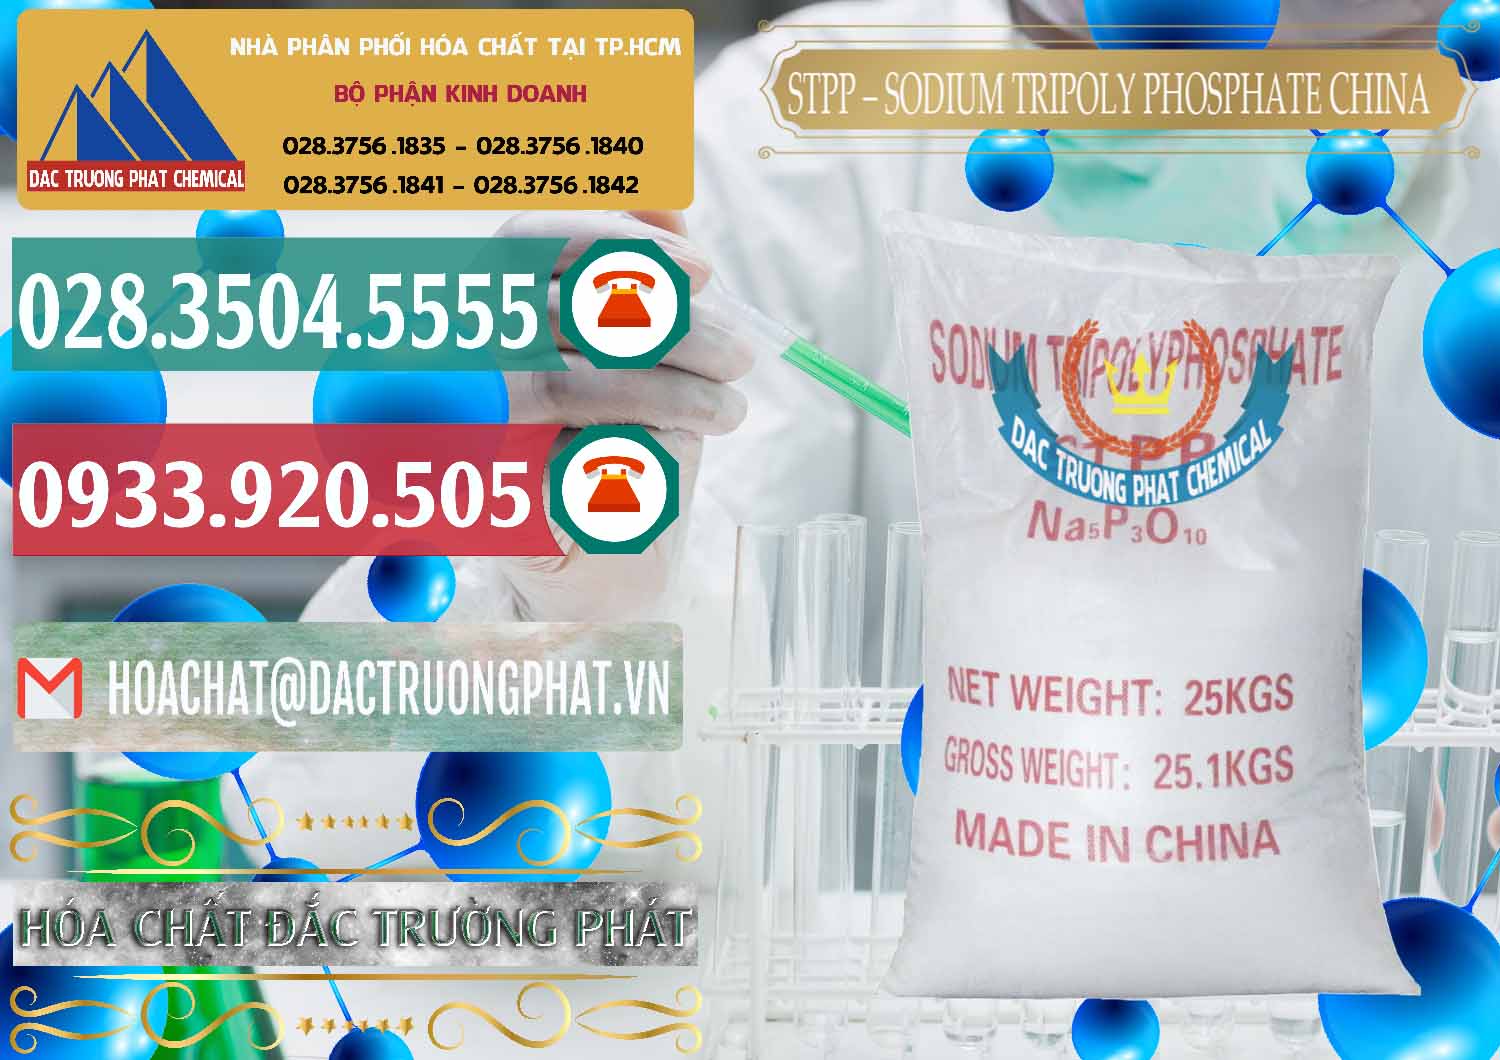 Nơi chuyên cung cấp và bán Sodium Tripoly Phosphate - STPP 96% Chữ Đỏ Trung Quốc China - 0155 - Nơi phân phối và kinh doanh hóa chất tại TP.HCM - muabanhoachat.vn